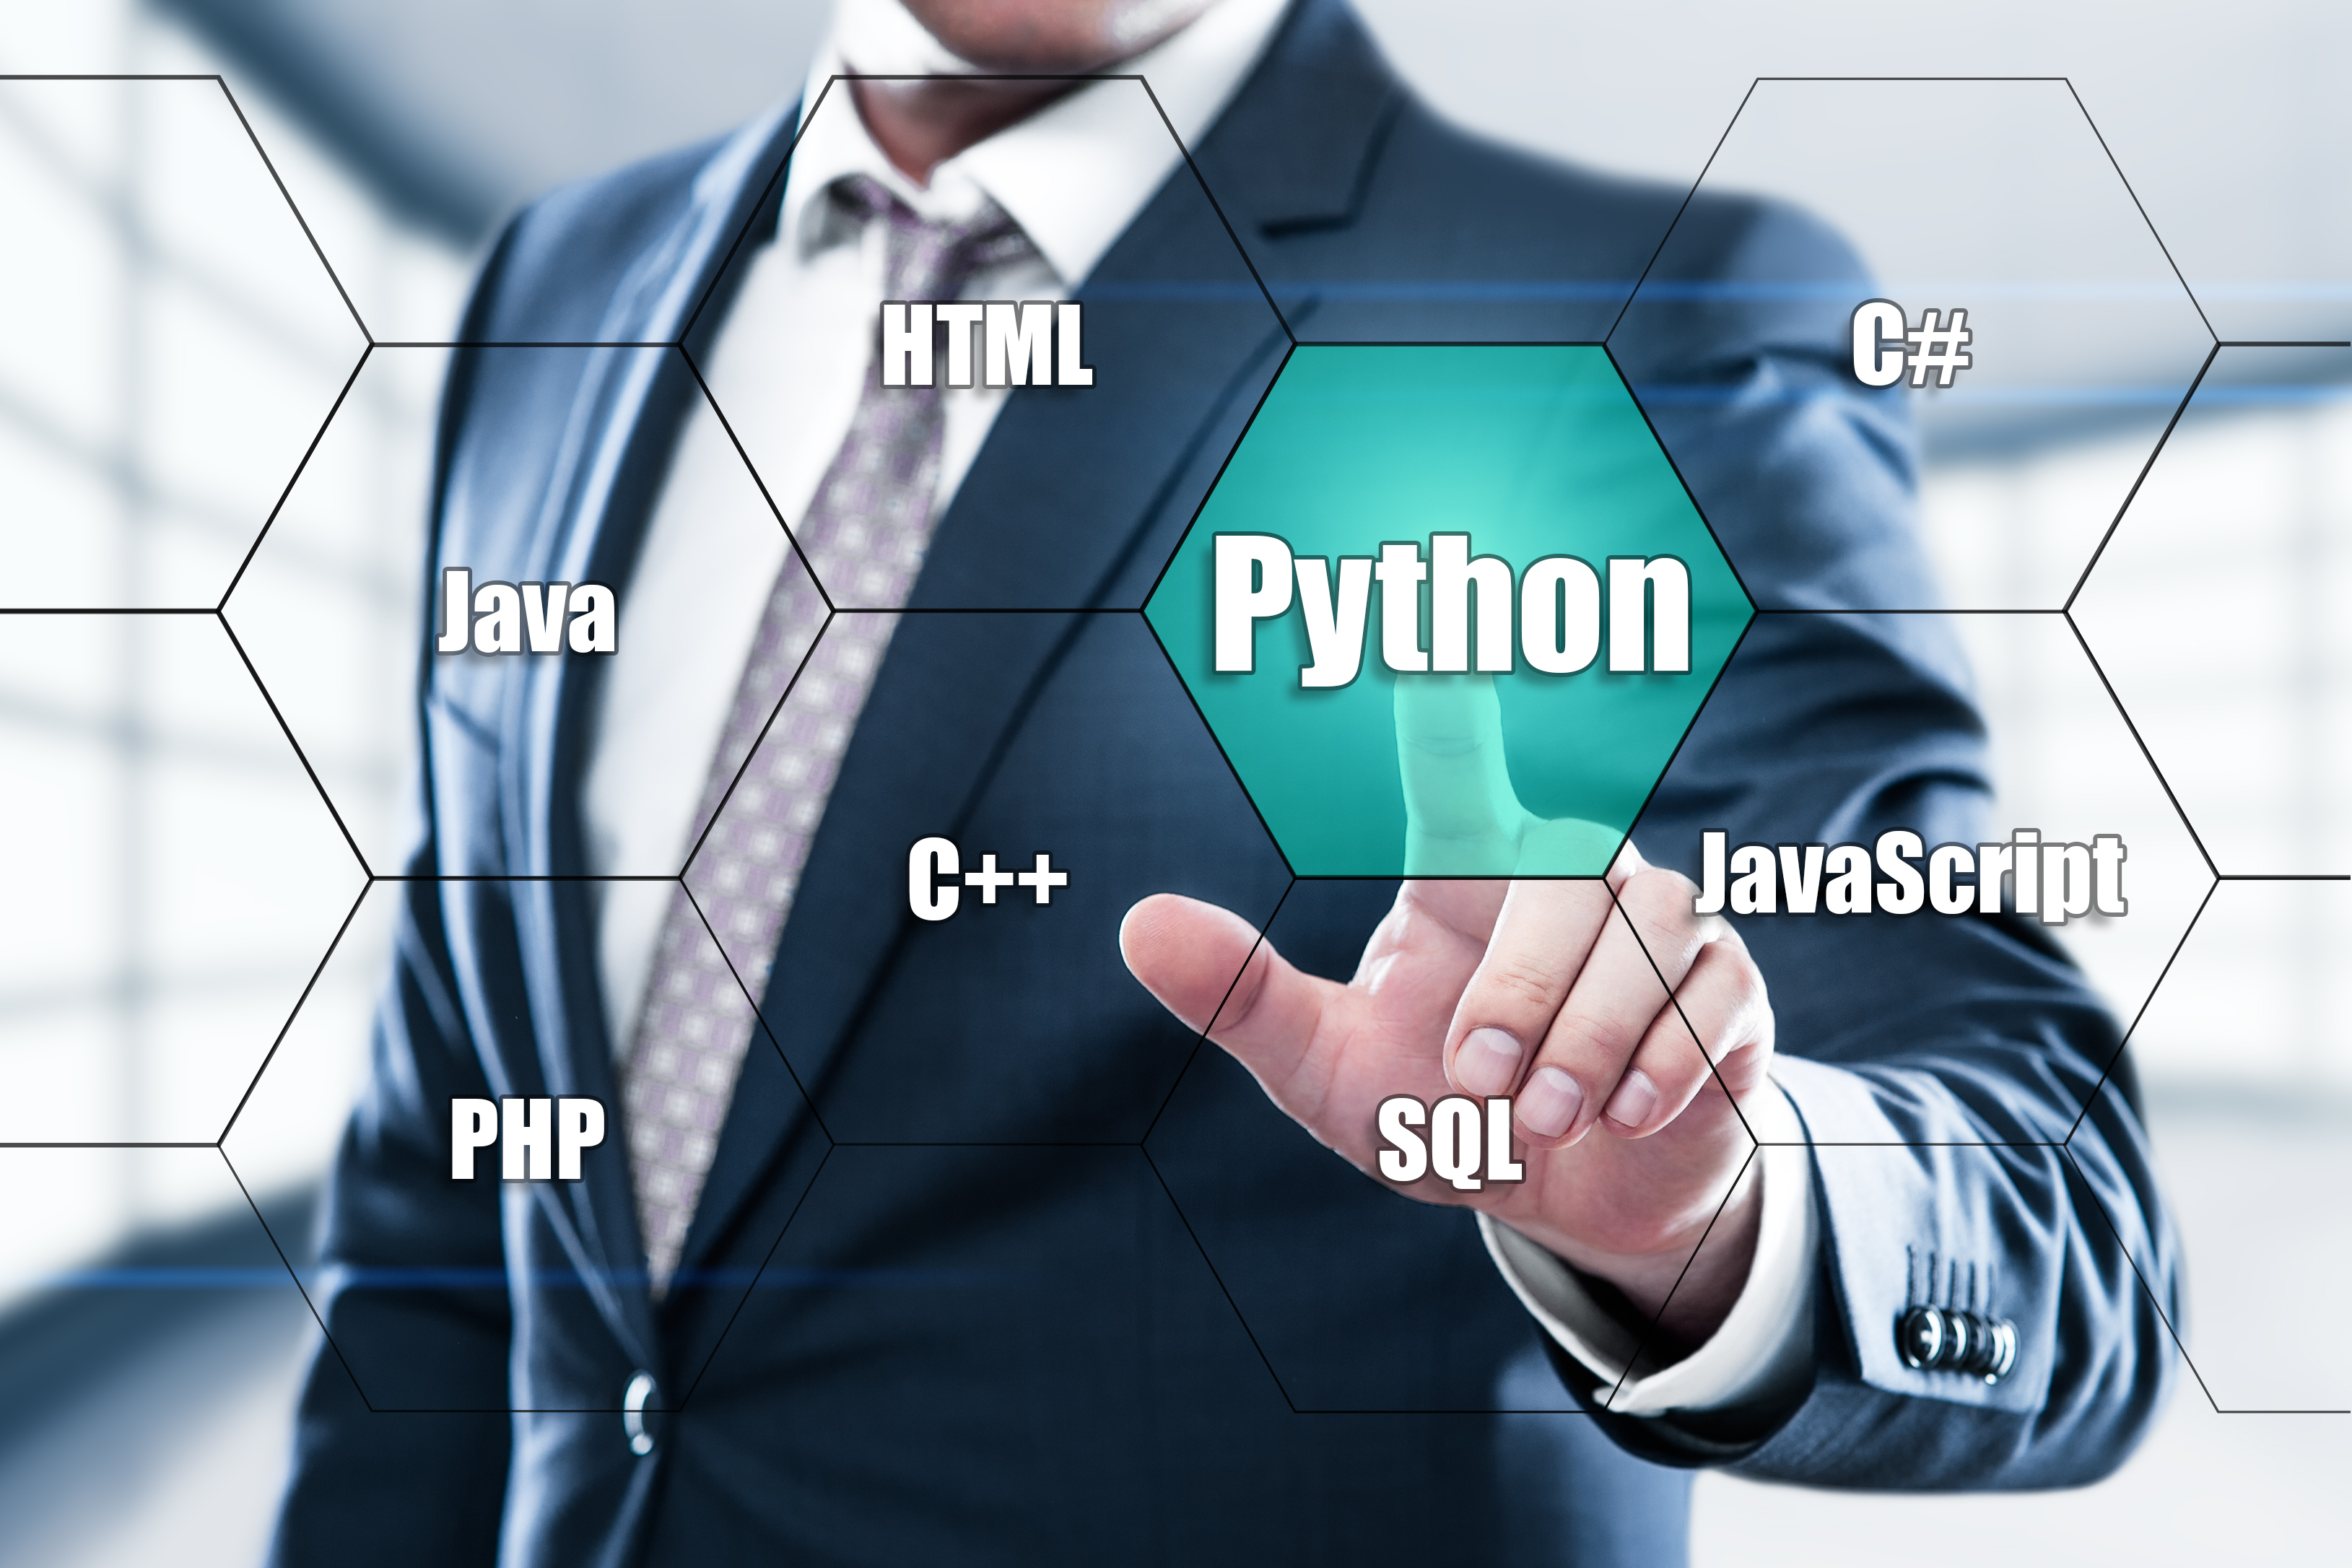 Rao lương khủng nhưng doanh nghiệp vẫn khó tuyển lập trình viên Python, tại sao?